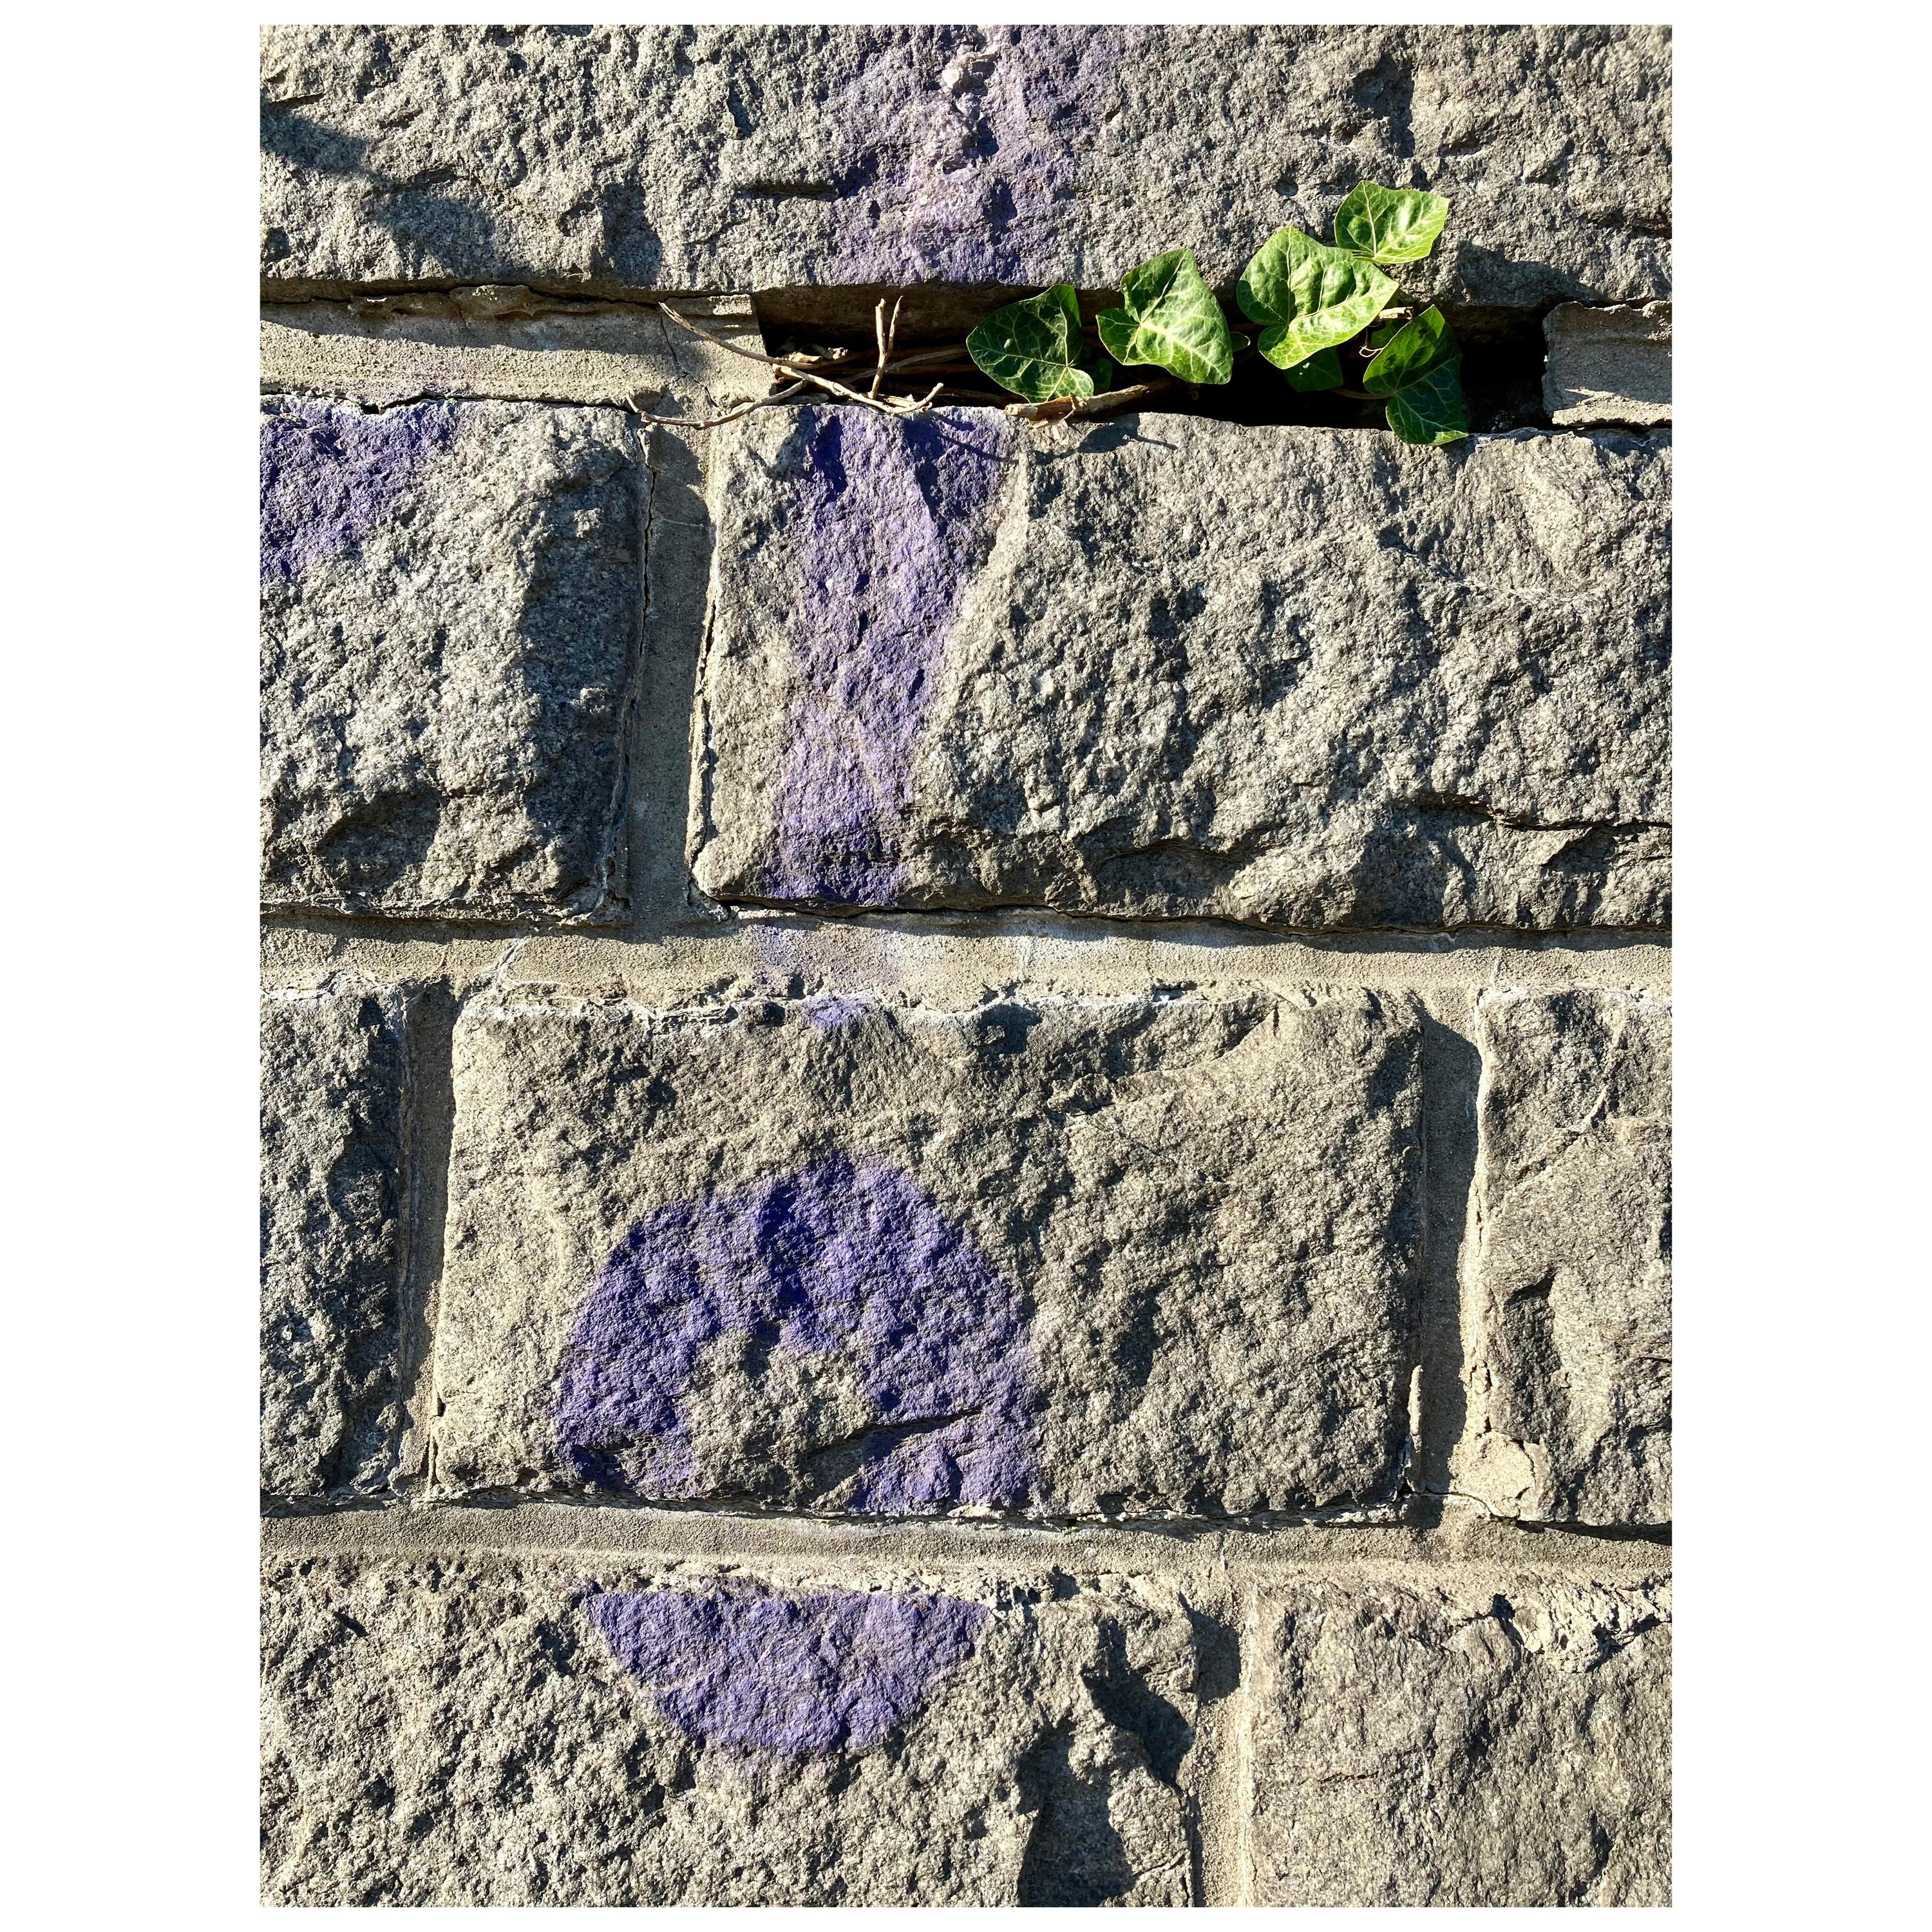 vert et violet  Tirage photographique édition limitée